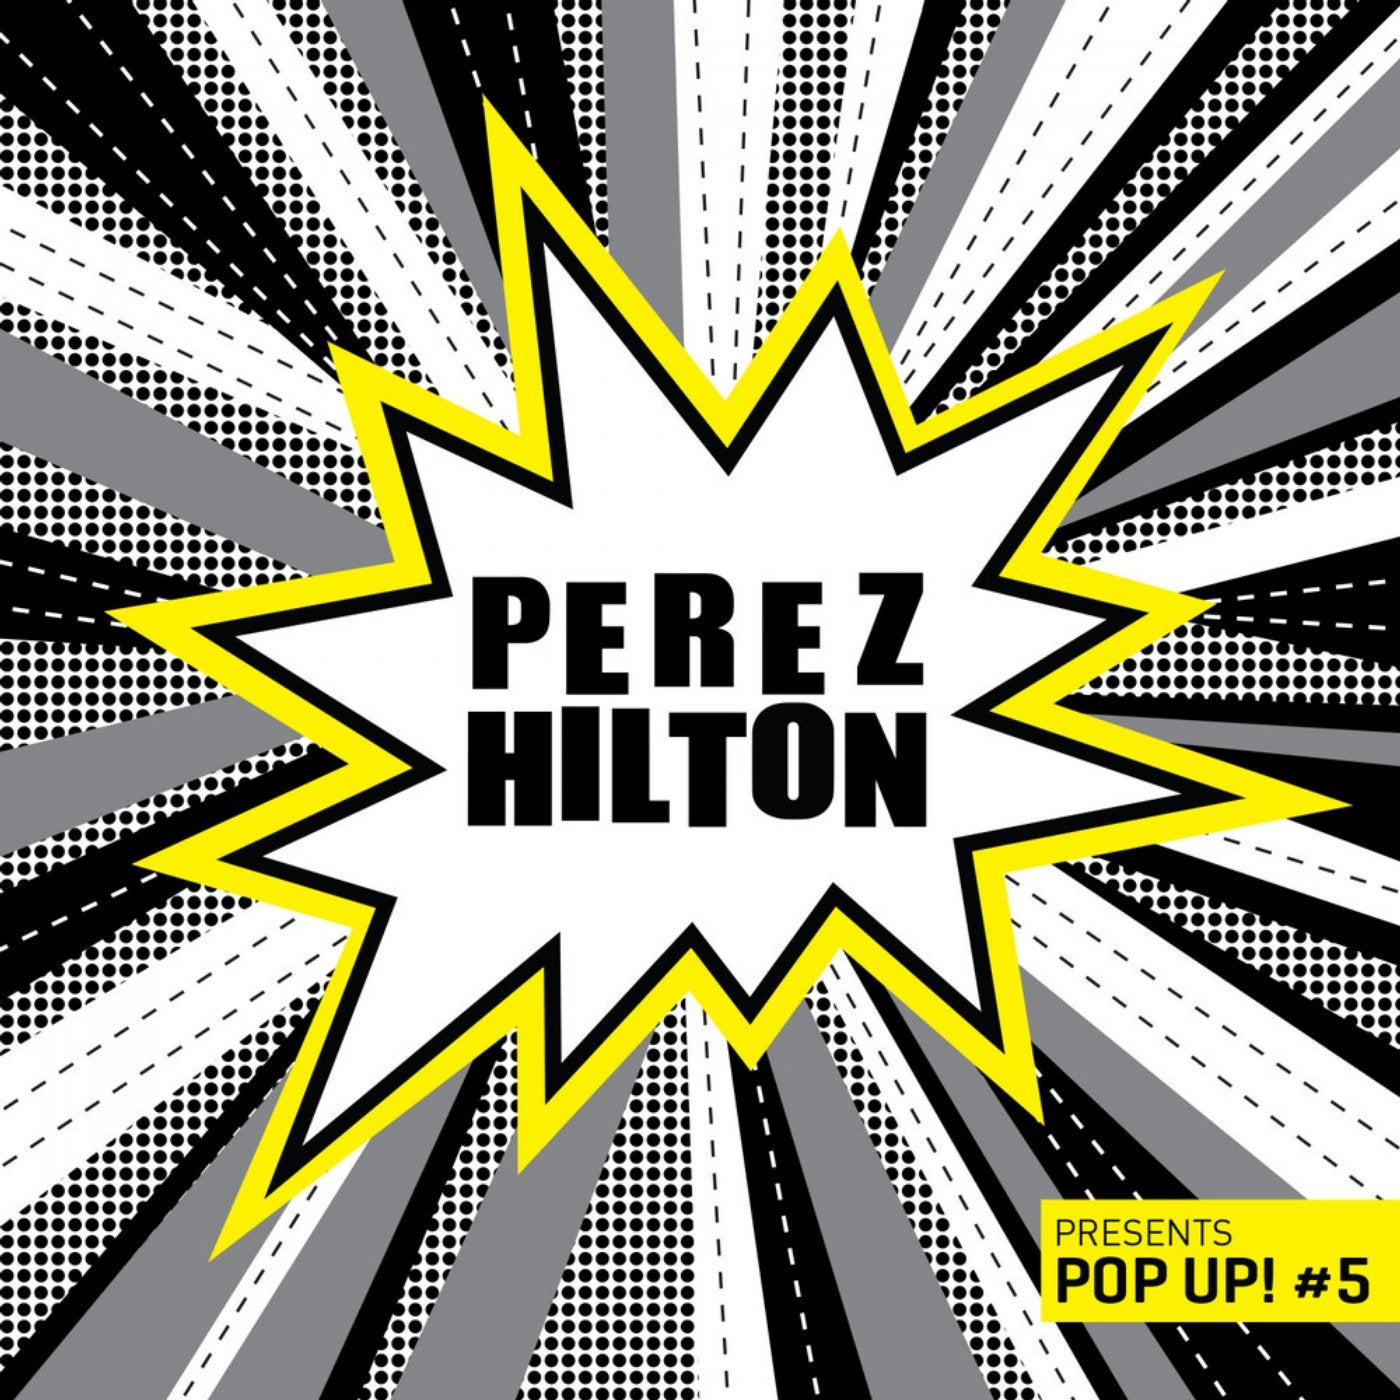 Perez Hilton Presents Pop Up! #5